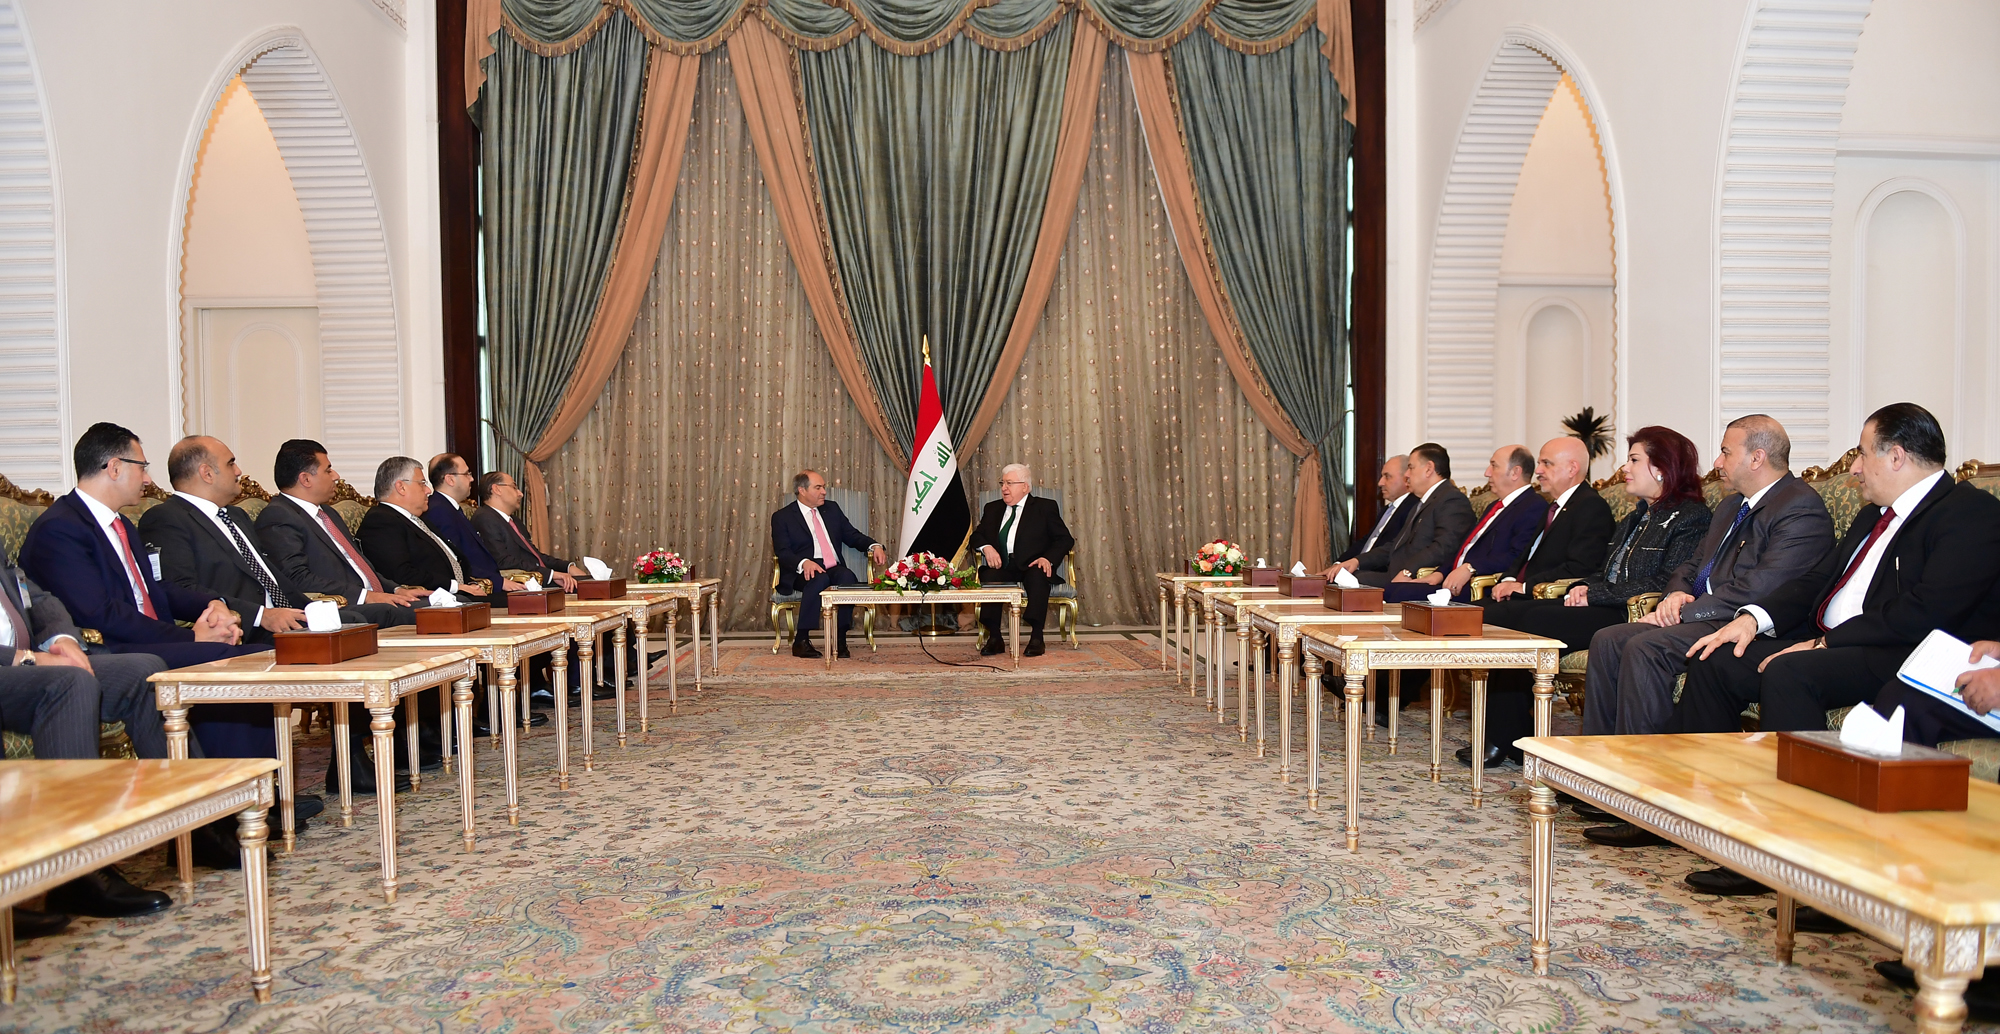 معصوم :العراق والأردن في خندق واحد أمام التحديات وتعزيز التعاون ثمرة النجاح